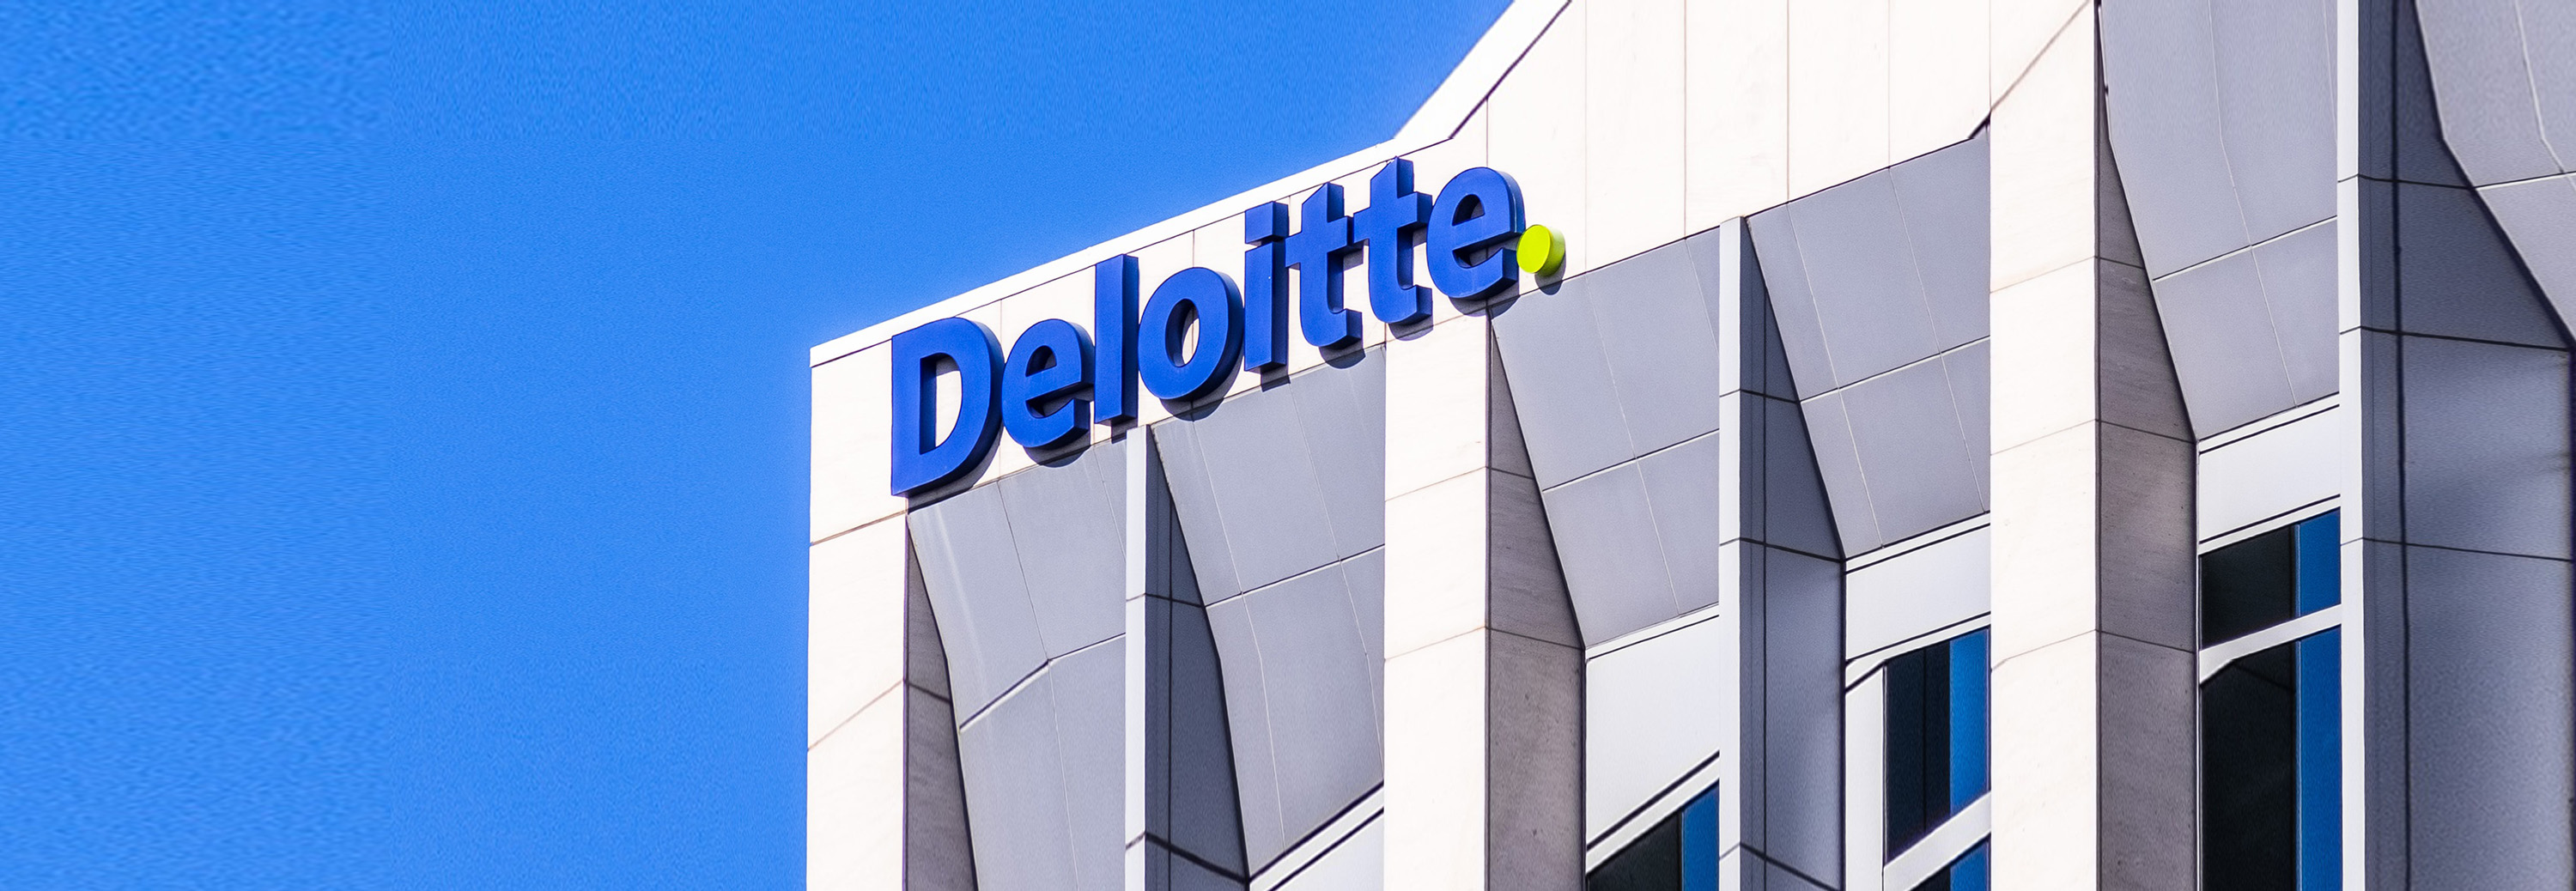 Deloitte Internship Program